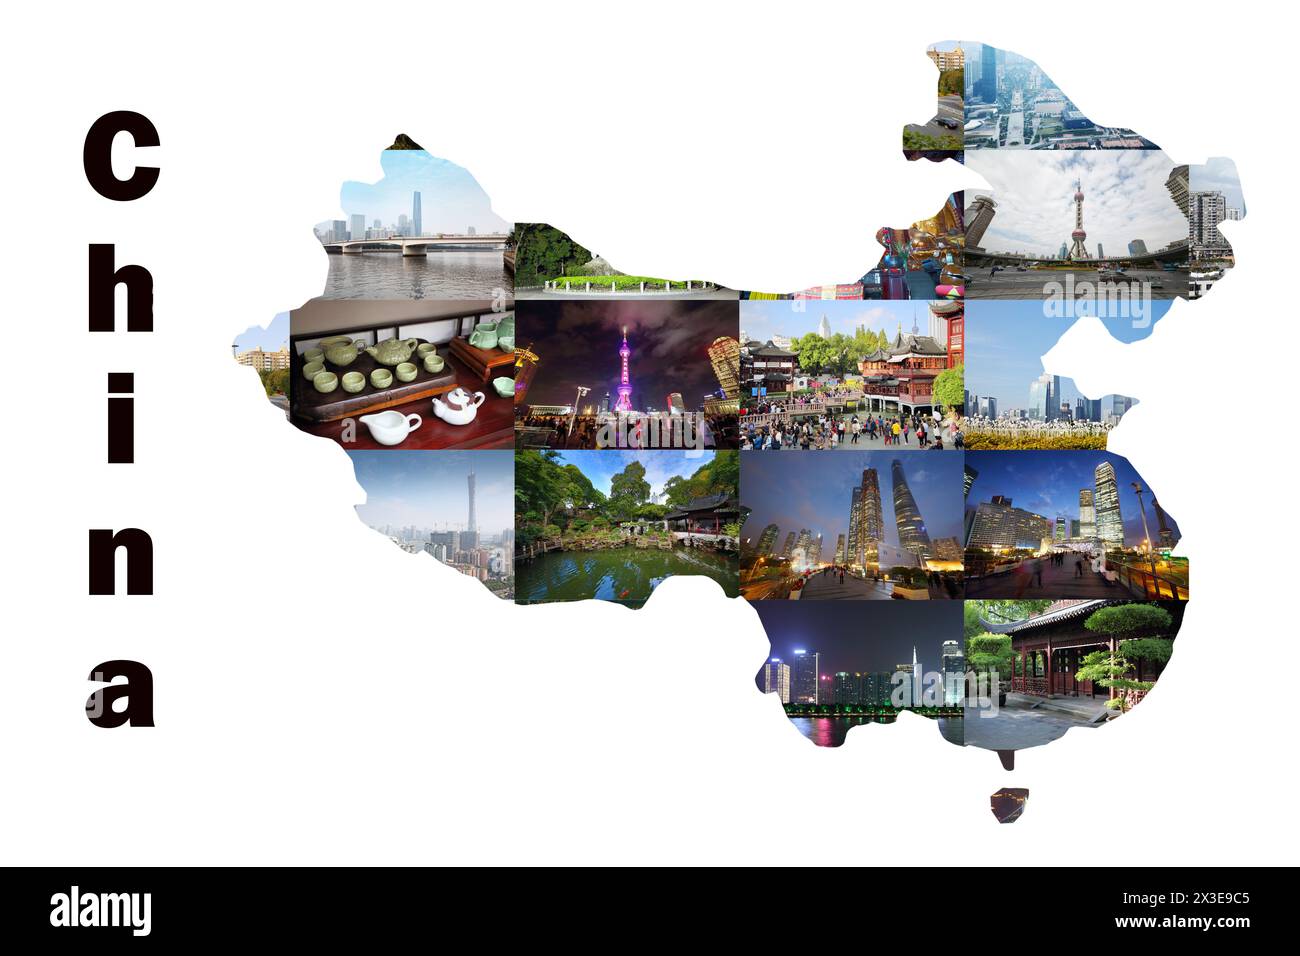 Carte de la Chine avec vues des villes de Guangzhou et Shanghai, collage Banque D'Images